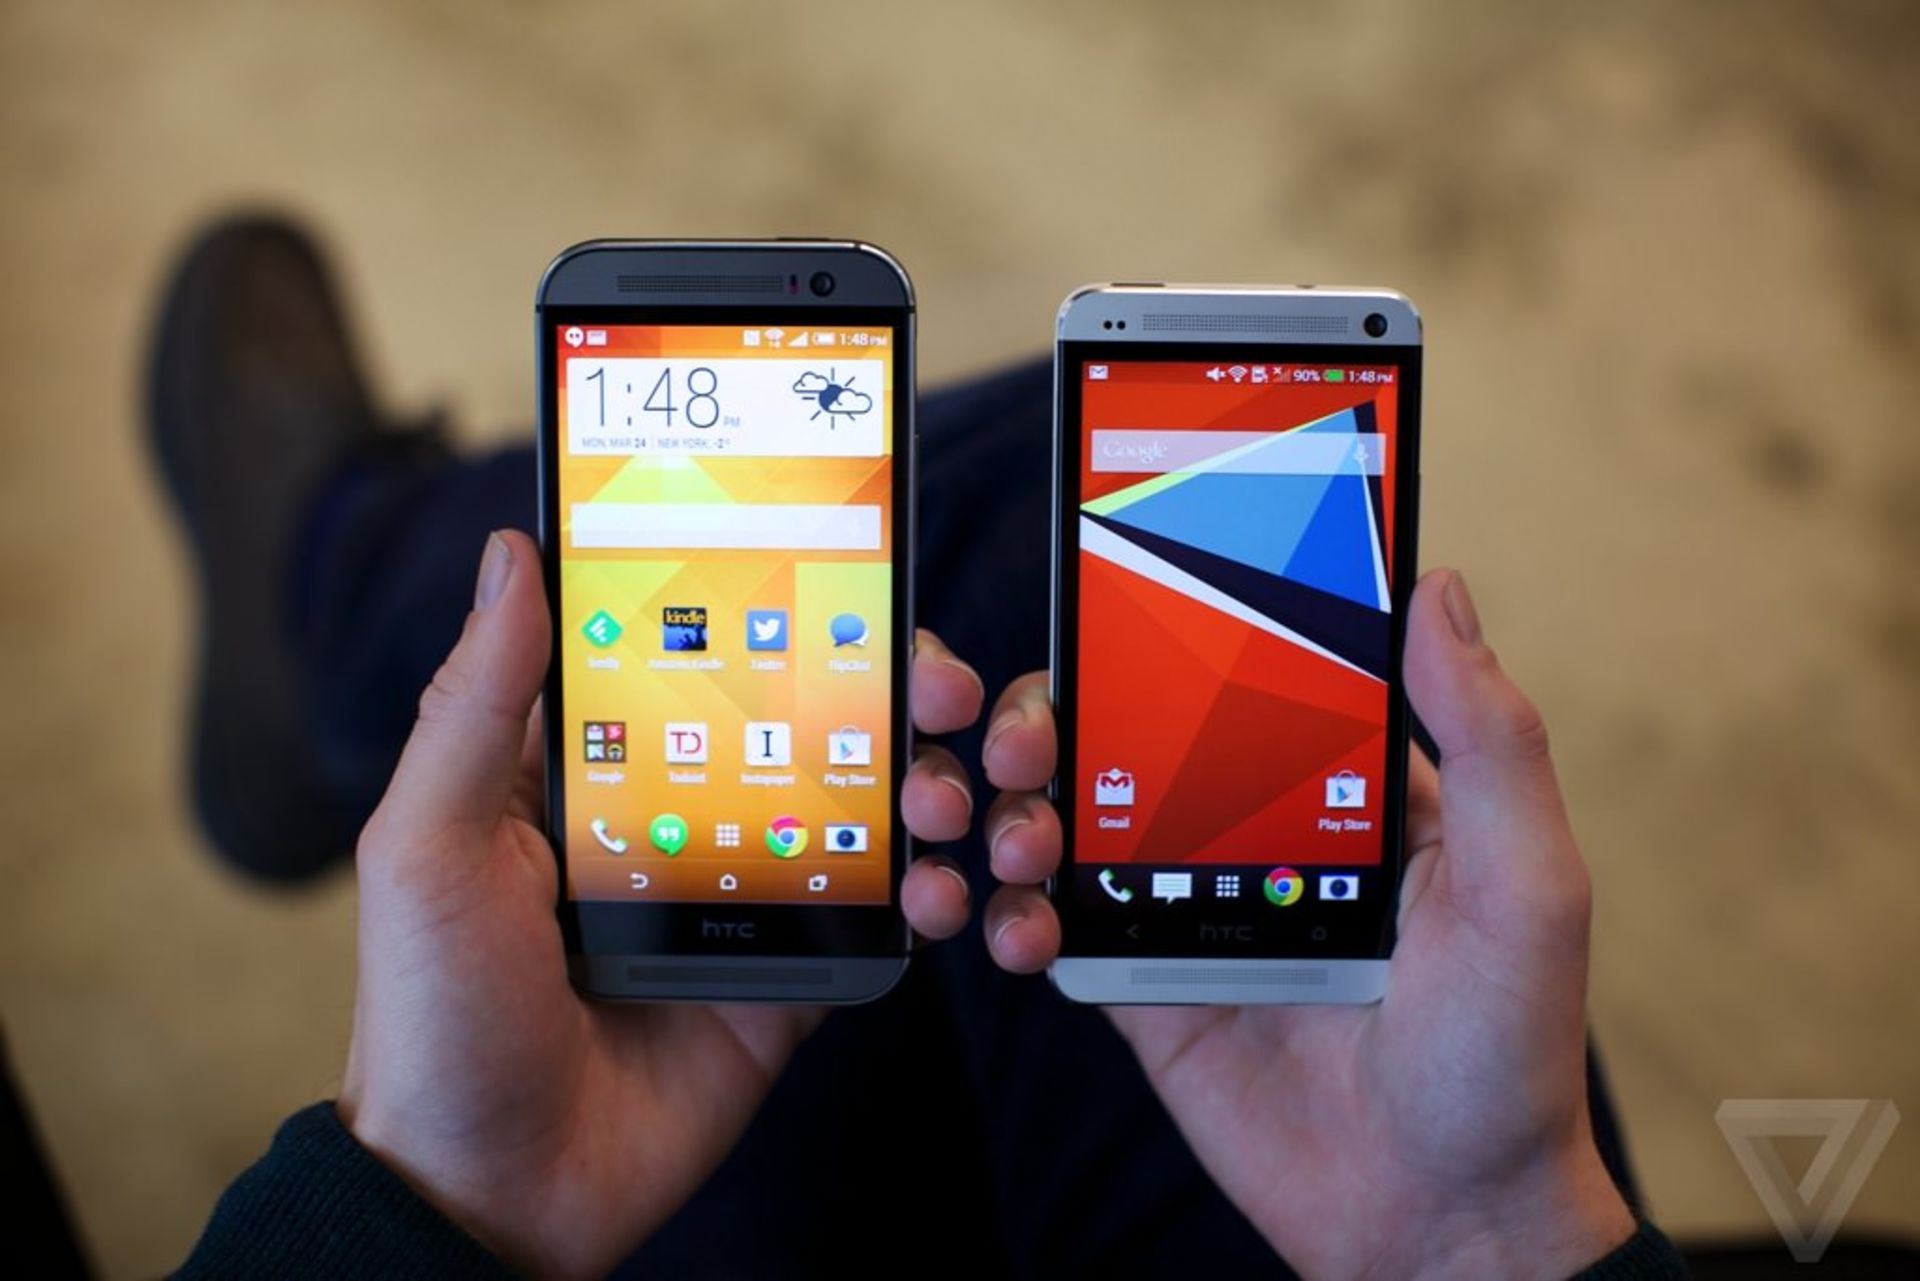 HTC M8 vs HTC One